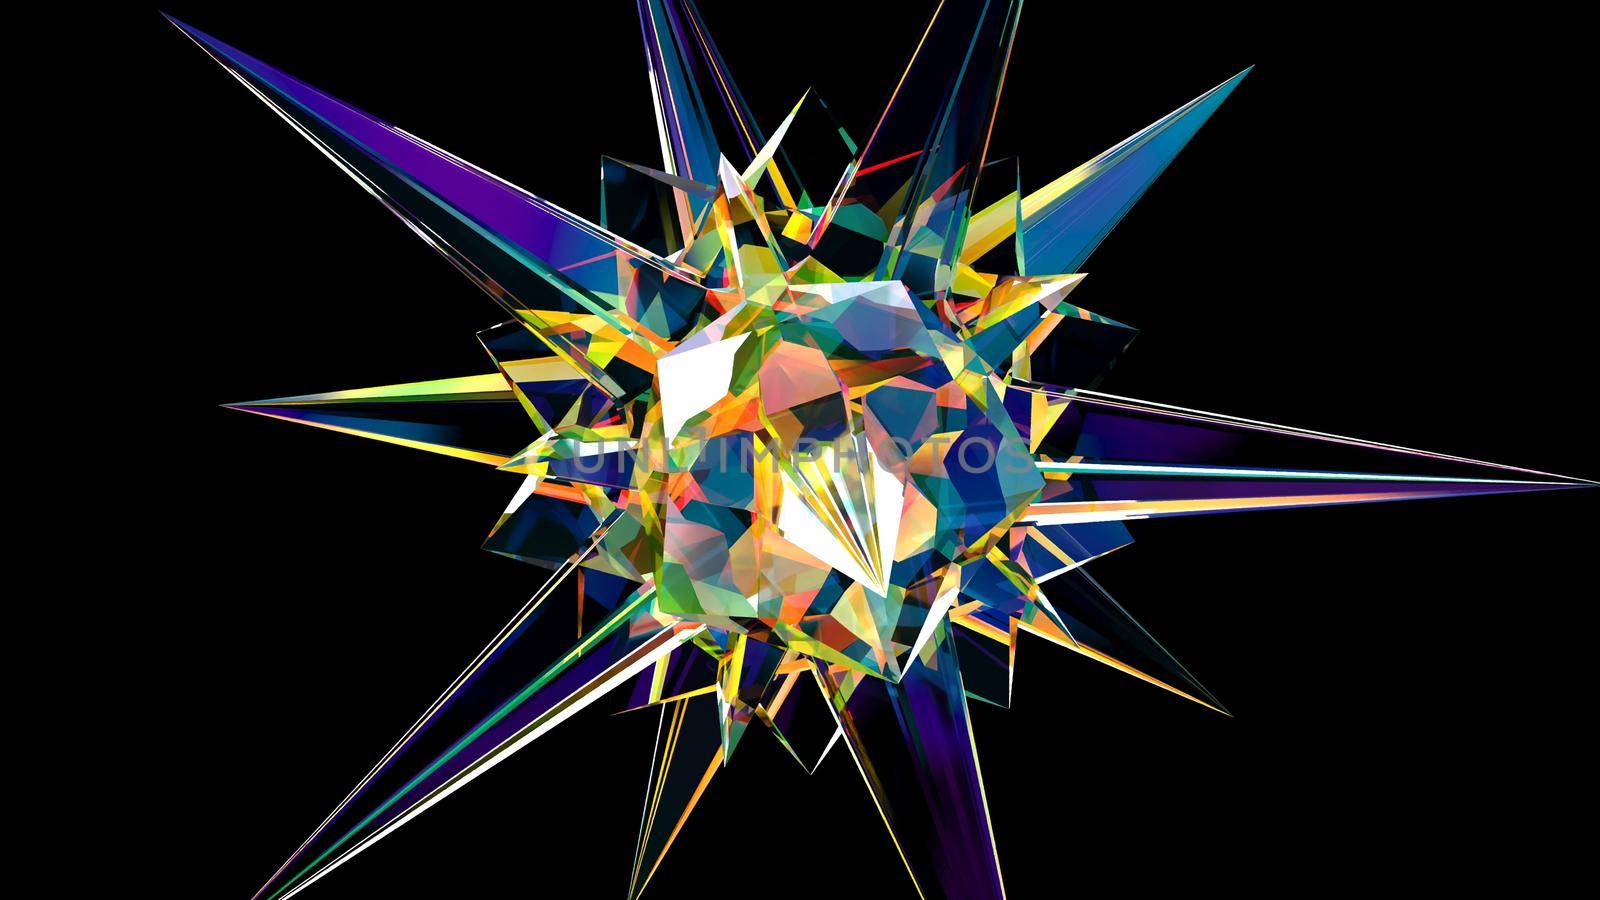 Rainbow star gemstone crystal 3d render by Zozulinskyi